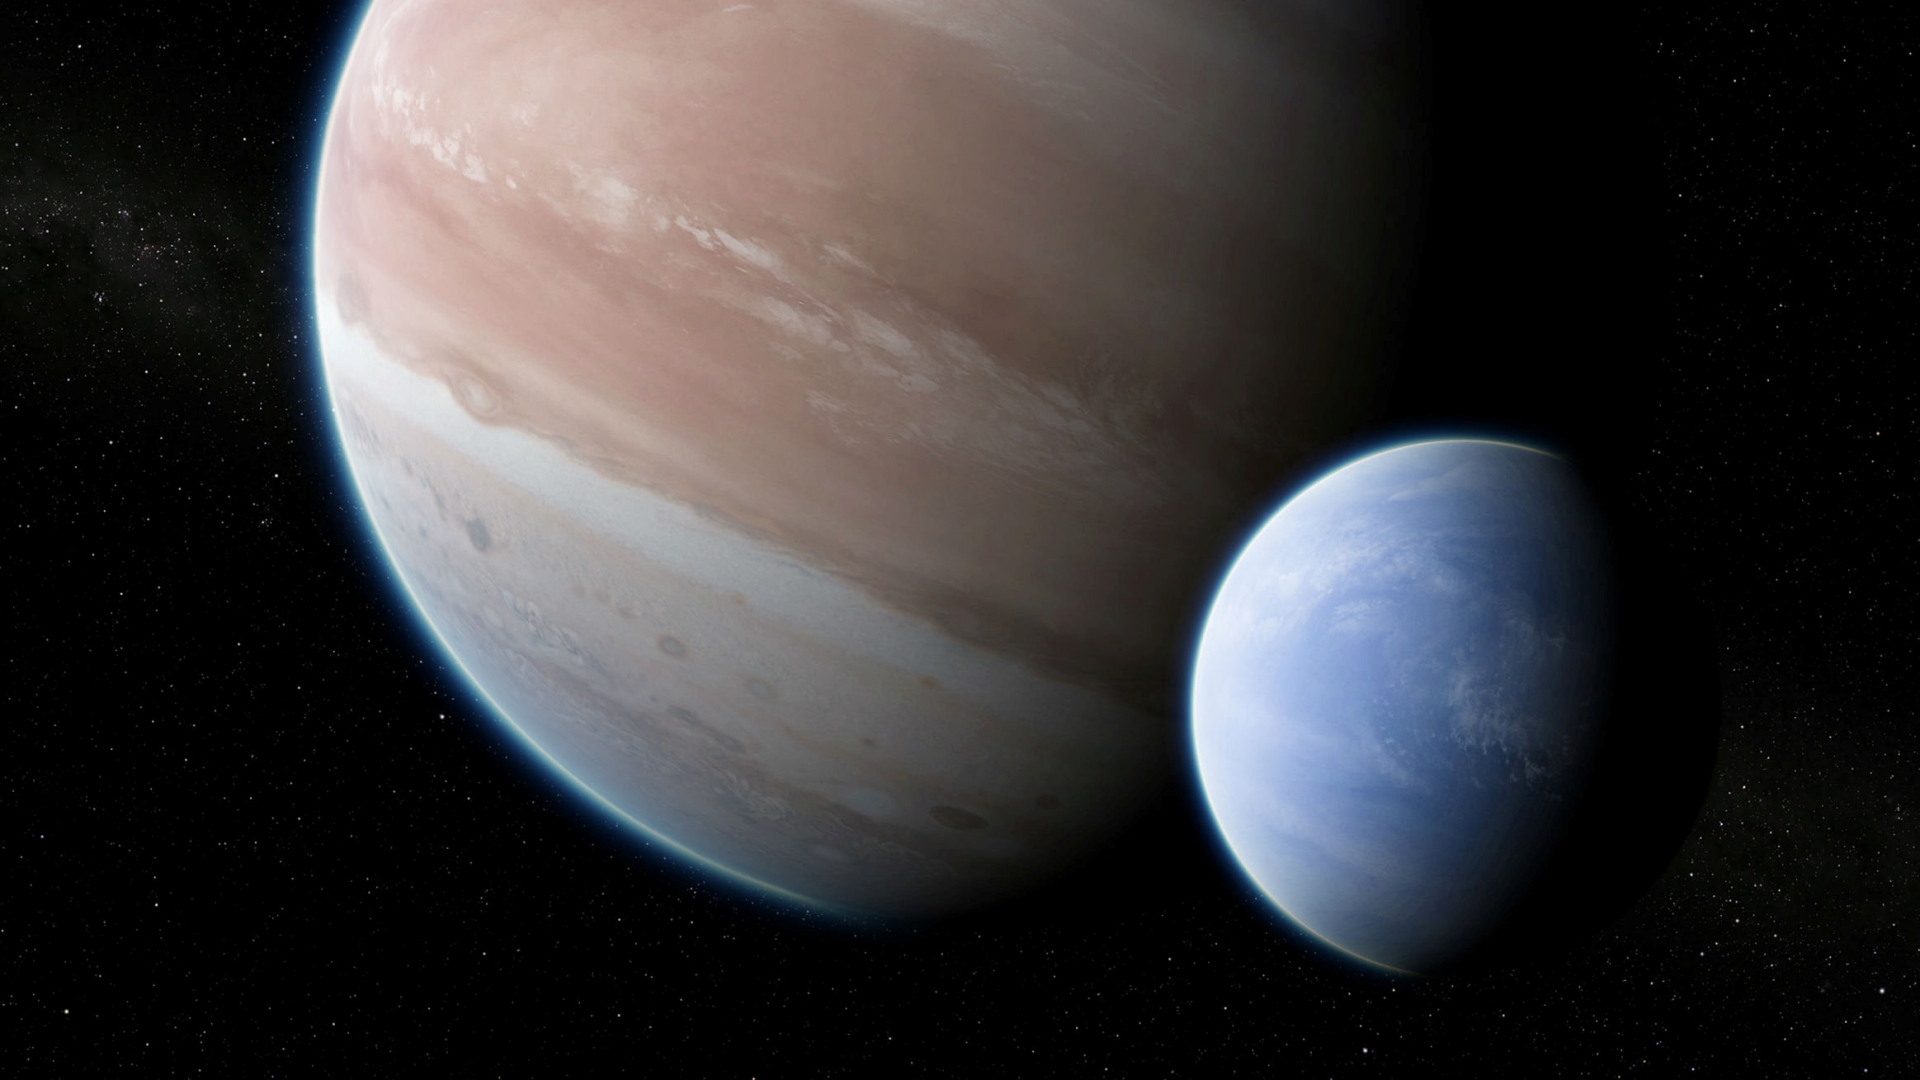 künstlerische Darstellung des Exoplaneten Kepler-1625b | Bildquelle: REUTERS